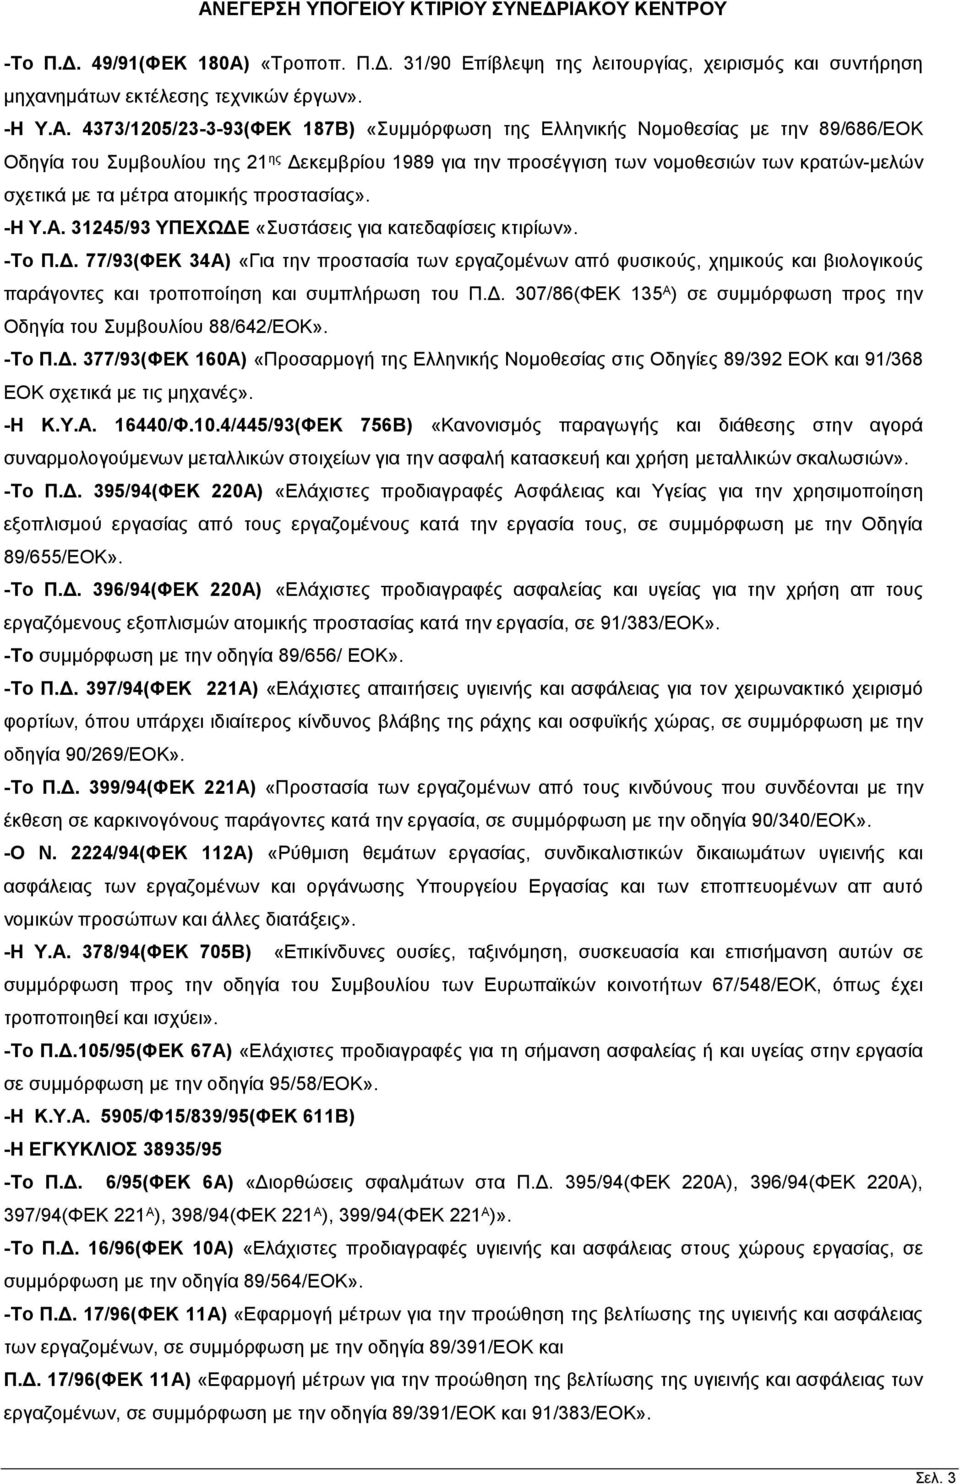 4373/1205/23-3-93(ΦΕΚ 187Β) «Συμμόρφωση της Ελληνικής Νομοθεσίας με την 89/686/ΕΟΚ Οδηγία του Συμβουλίου της 21 ης Δεκεμβρίου 1989 για την προσέγγιση των νομοθεσιών των κρατών-μελών σχετικά με τα